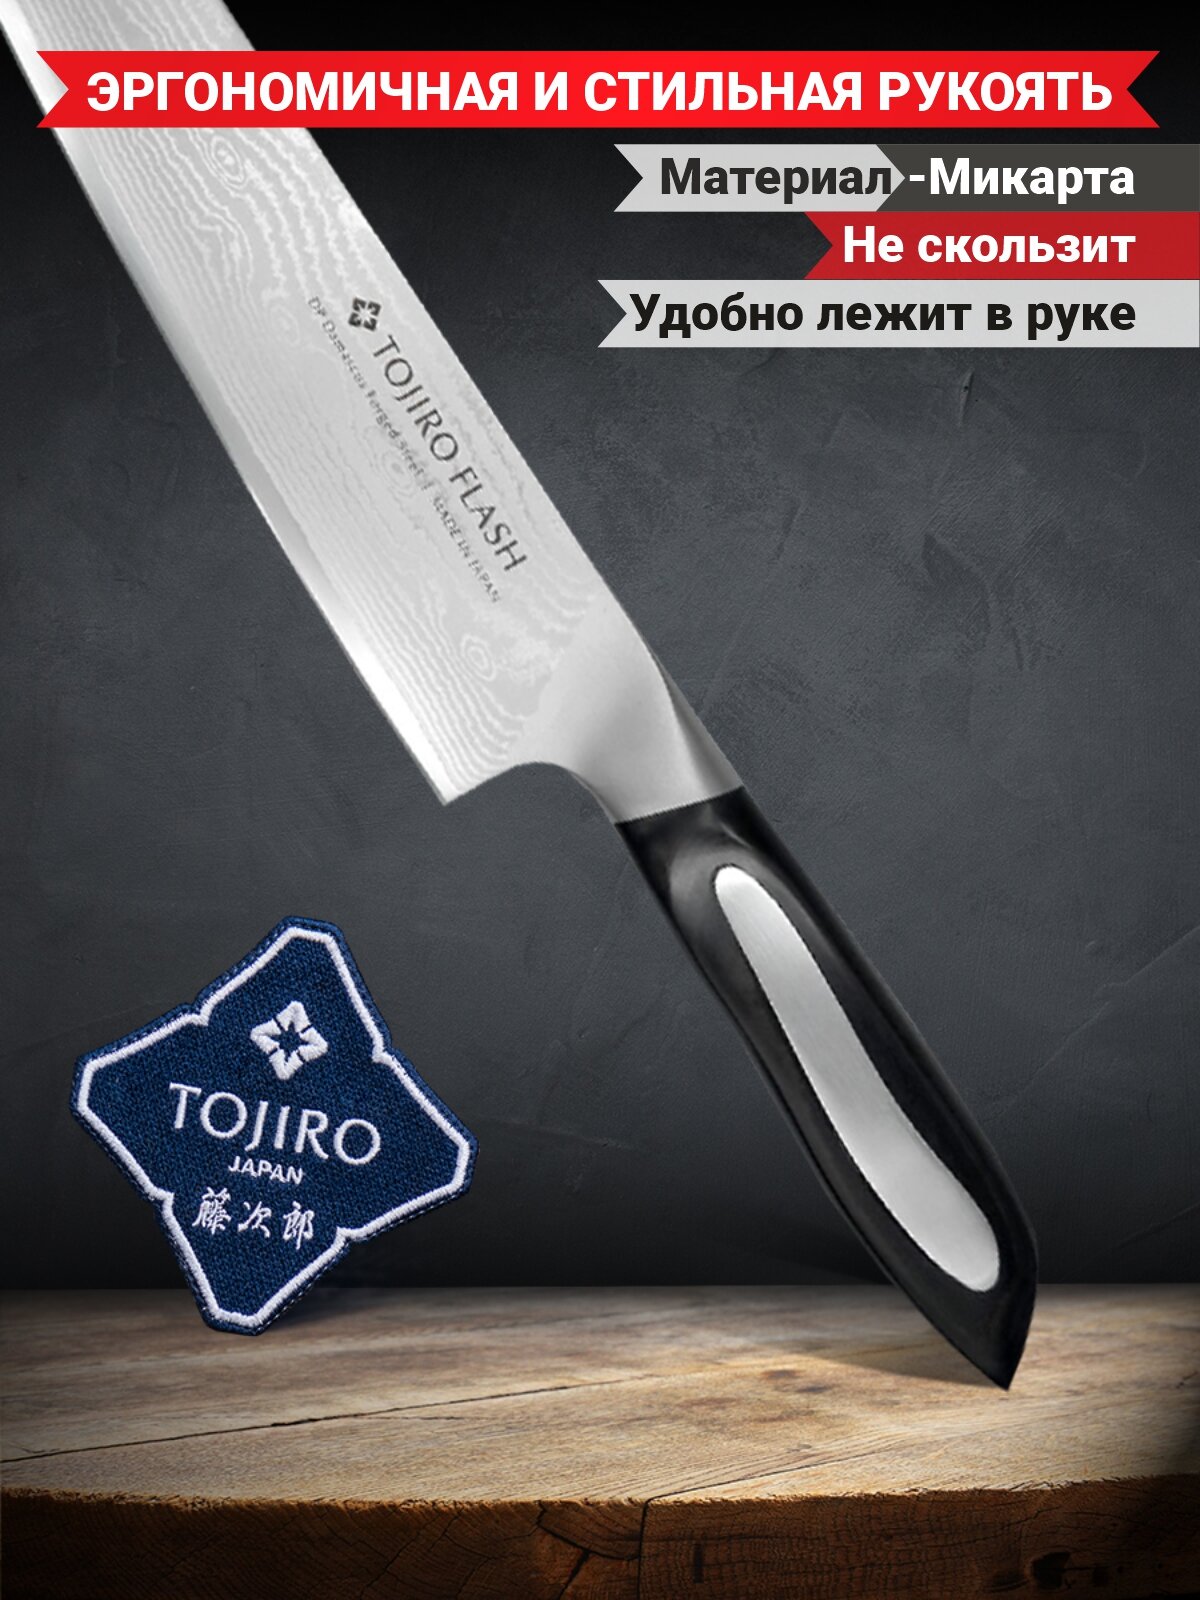 Нож шеф Tojiro Flash, 210 мм, сталь VG10, 63 слоя, рукоять микарта - фото №5